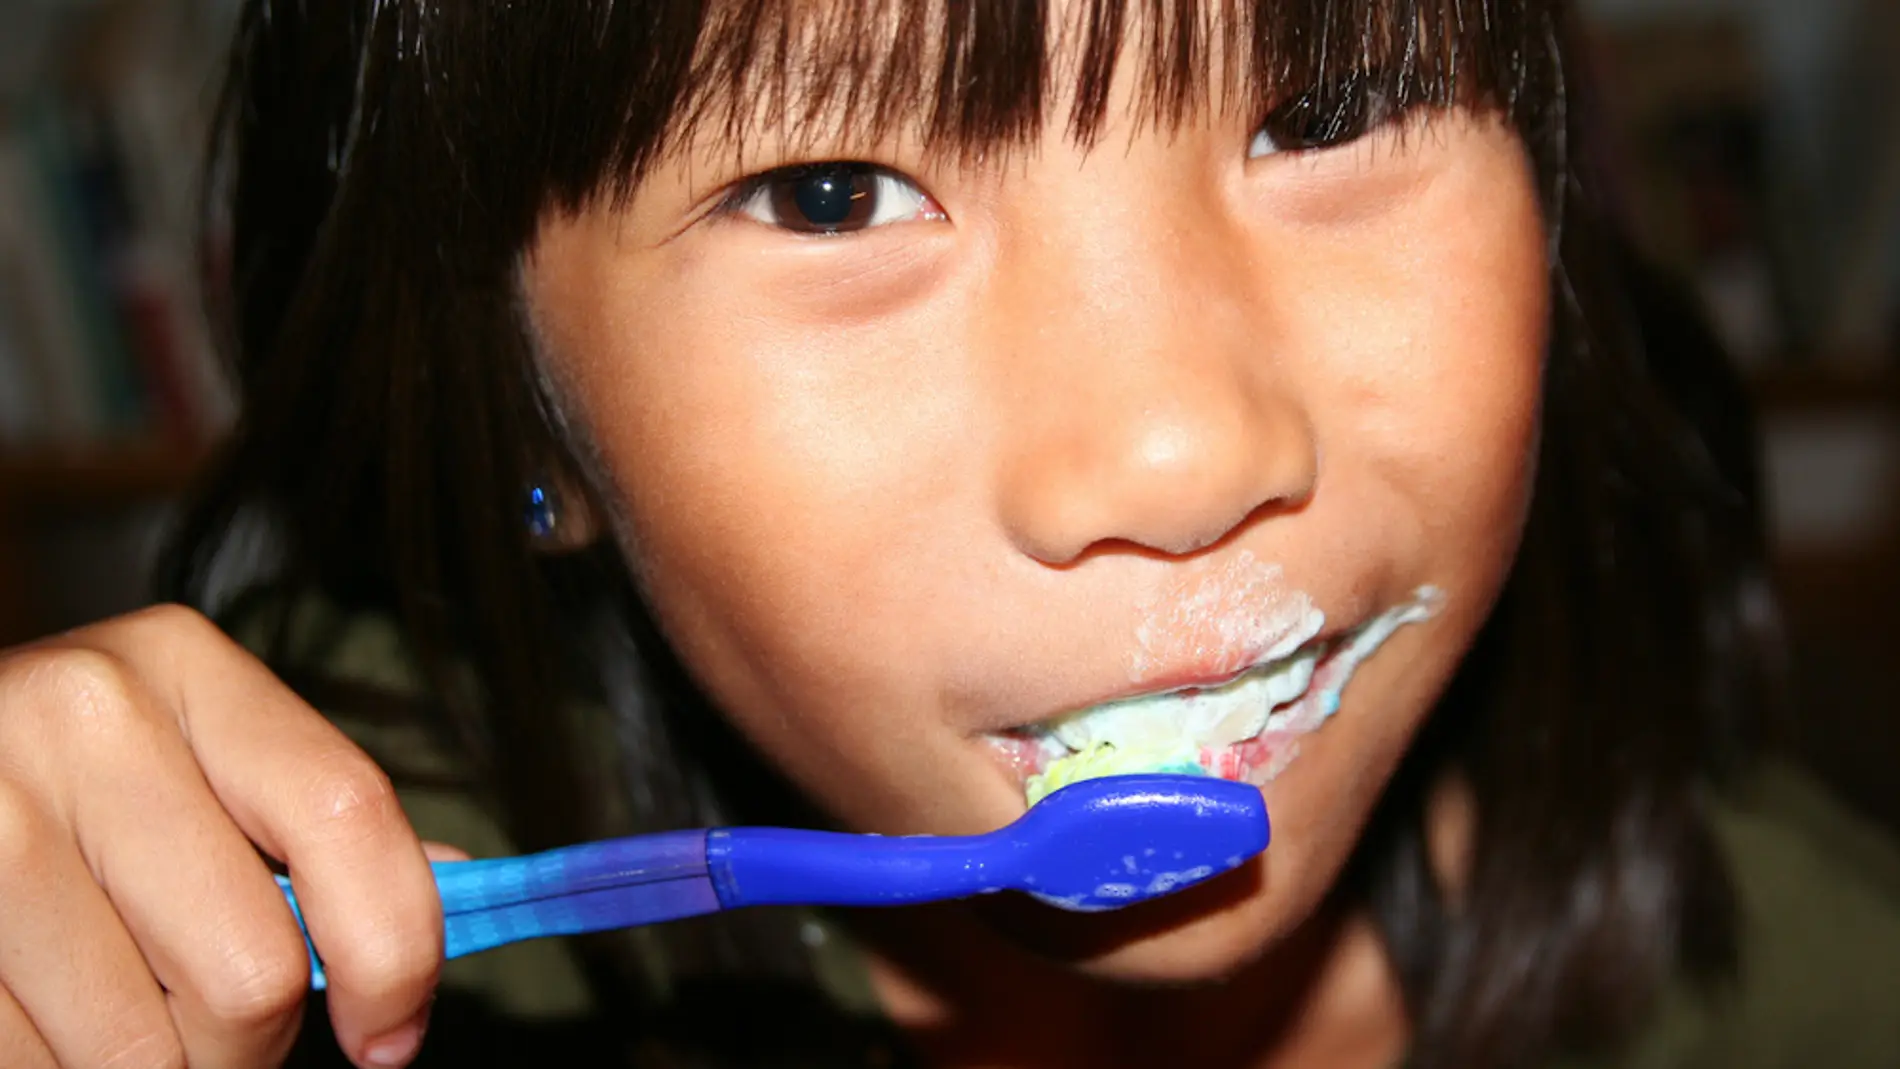 Un compuesto de la pasta de dientes afecta a las papilas gustativas